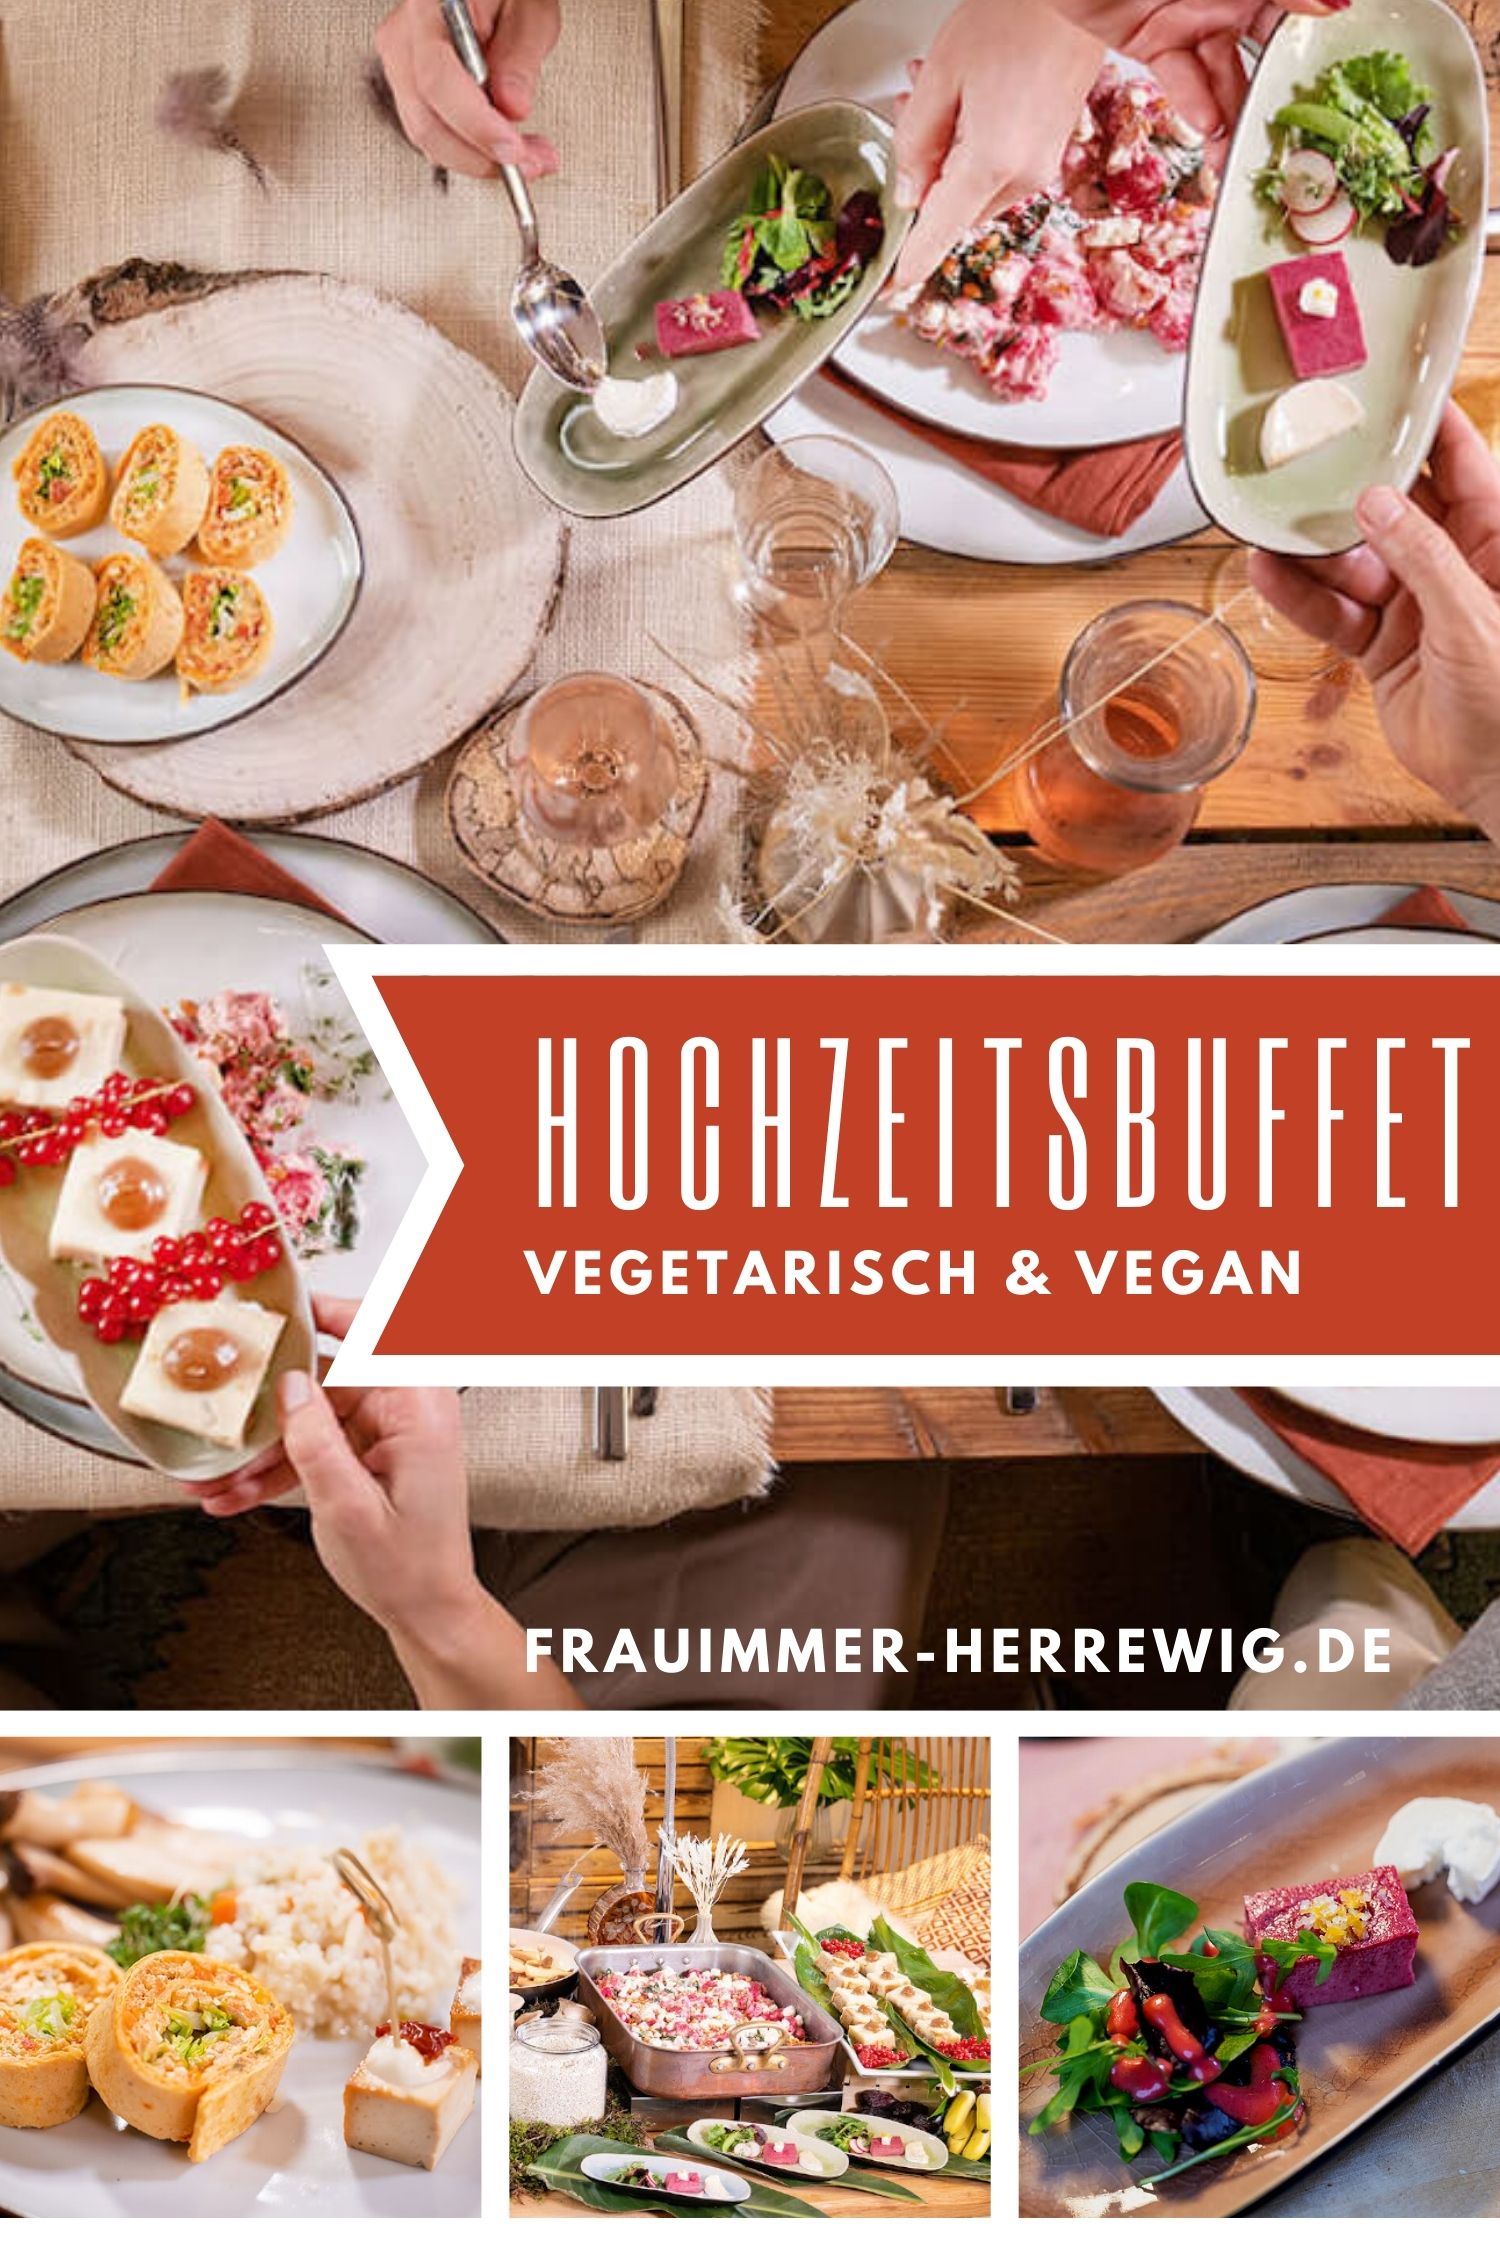 Hochzeitsbuffet vegetarisch vegan – gesehen bei frauimmer-herrewig.de